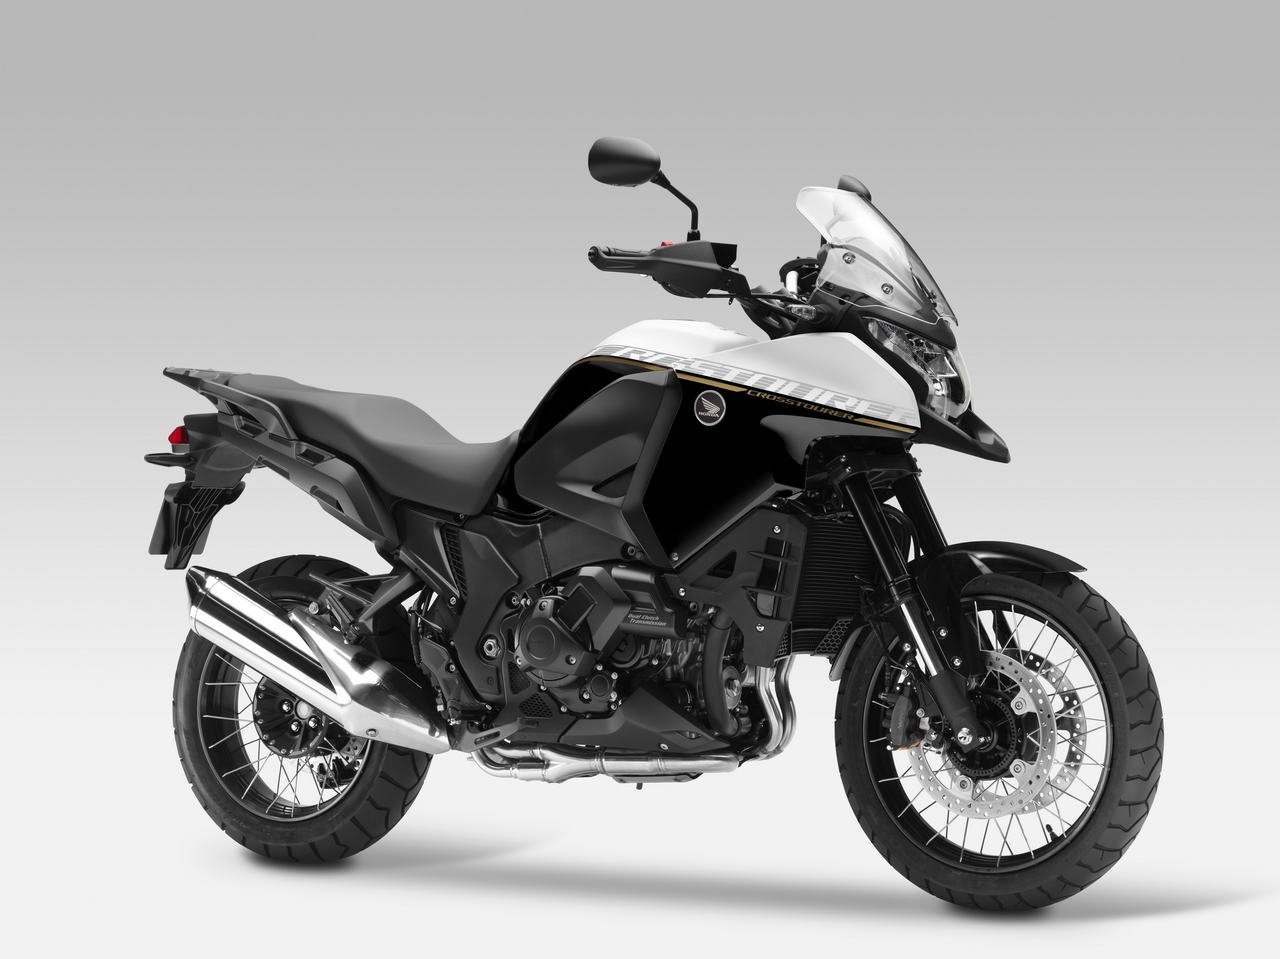 Listino Honda CBF 125 Moto 50 e 125 - image 13536_1 on https://moto.motori.net